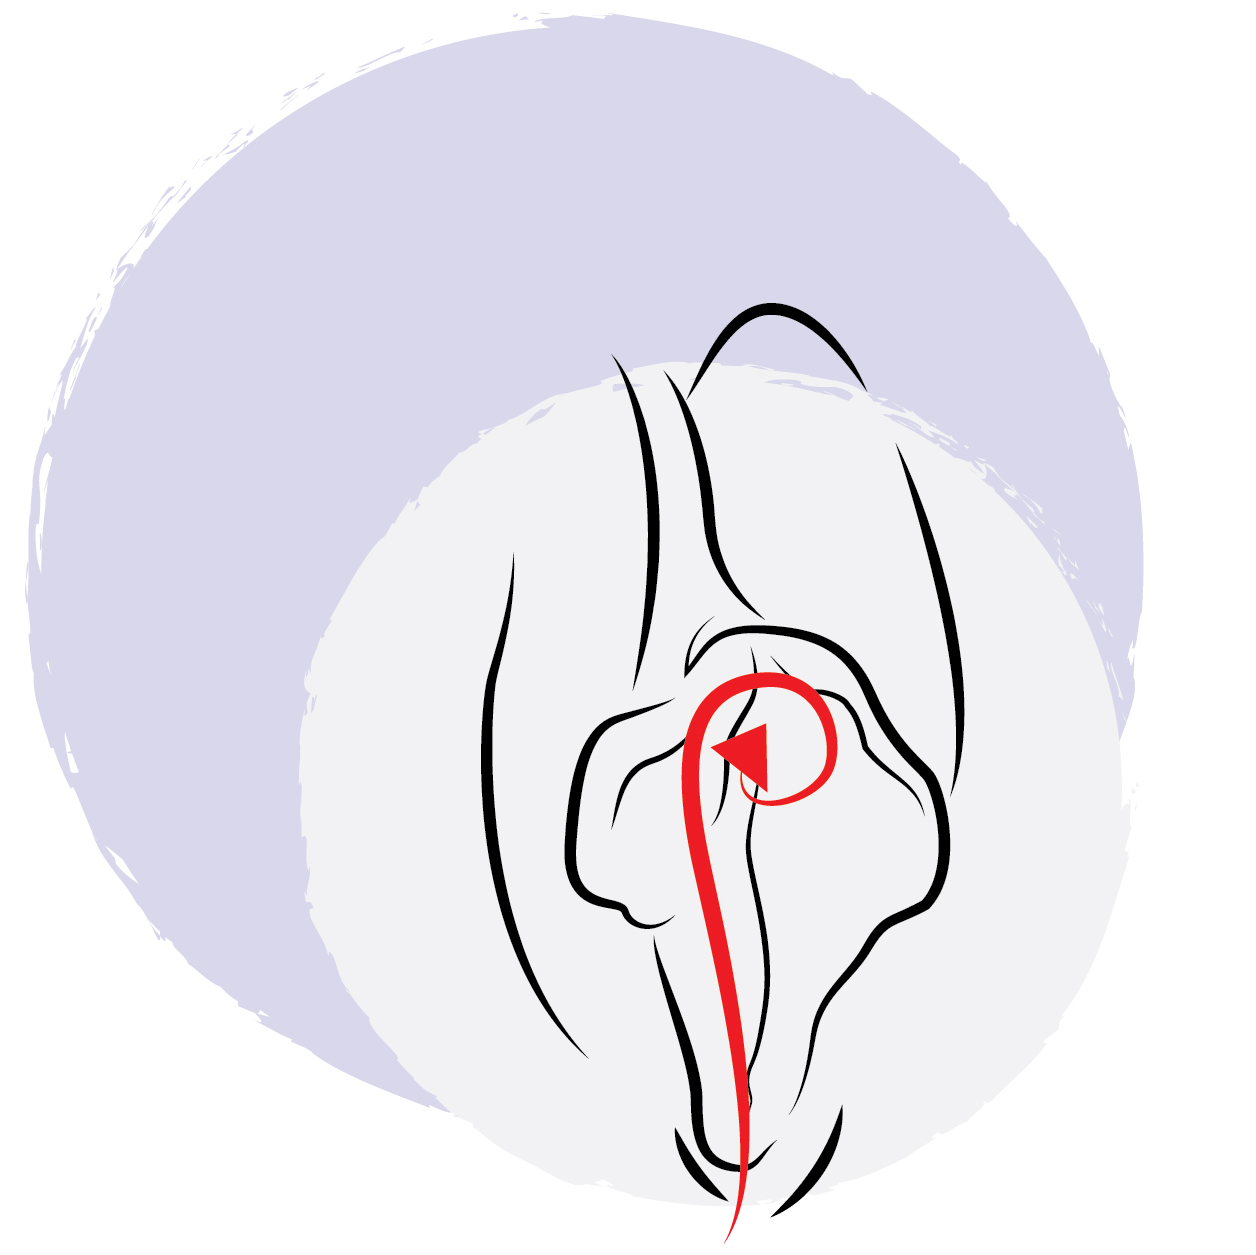 Lickjob Technik - die Klitoris beim Oralsex stimulieren